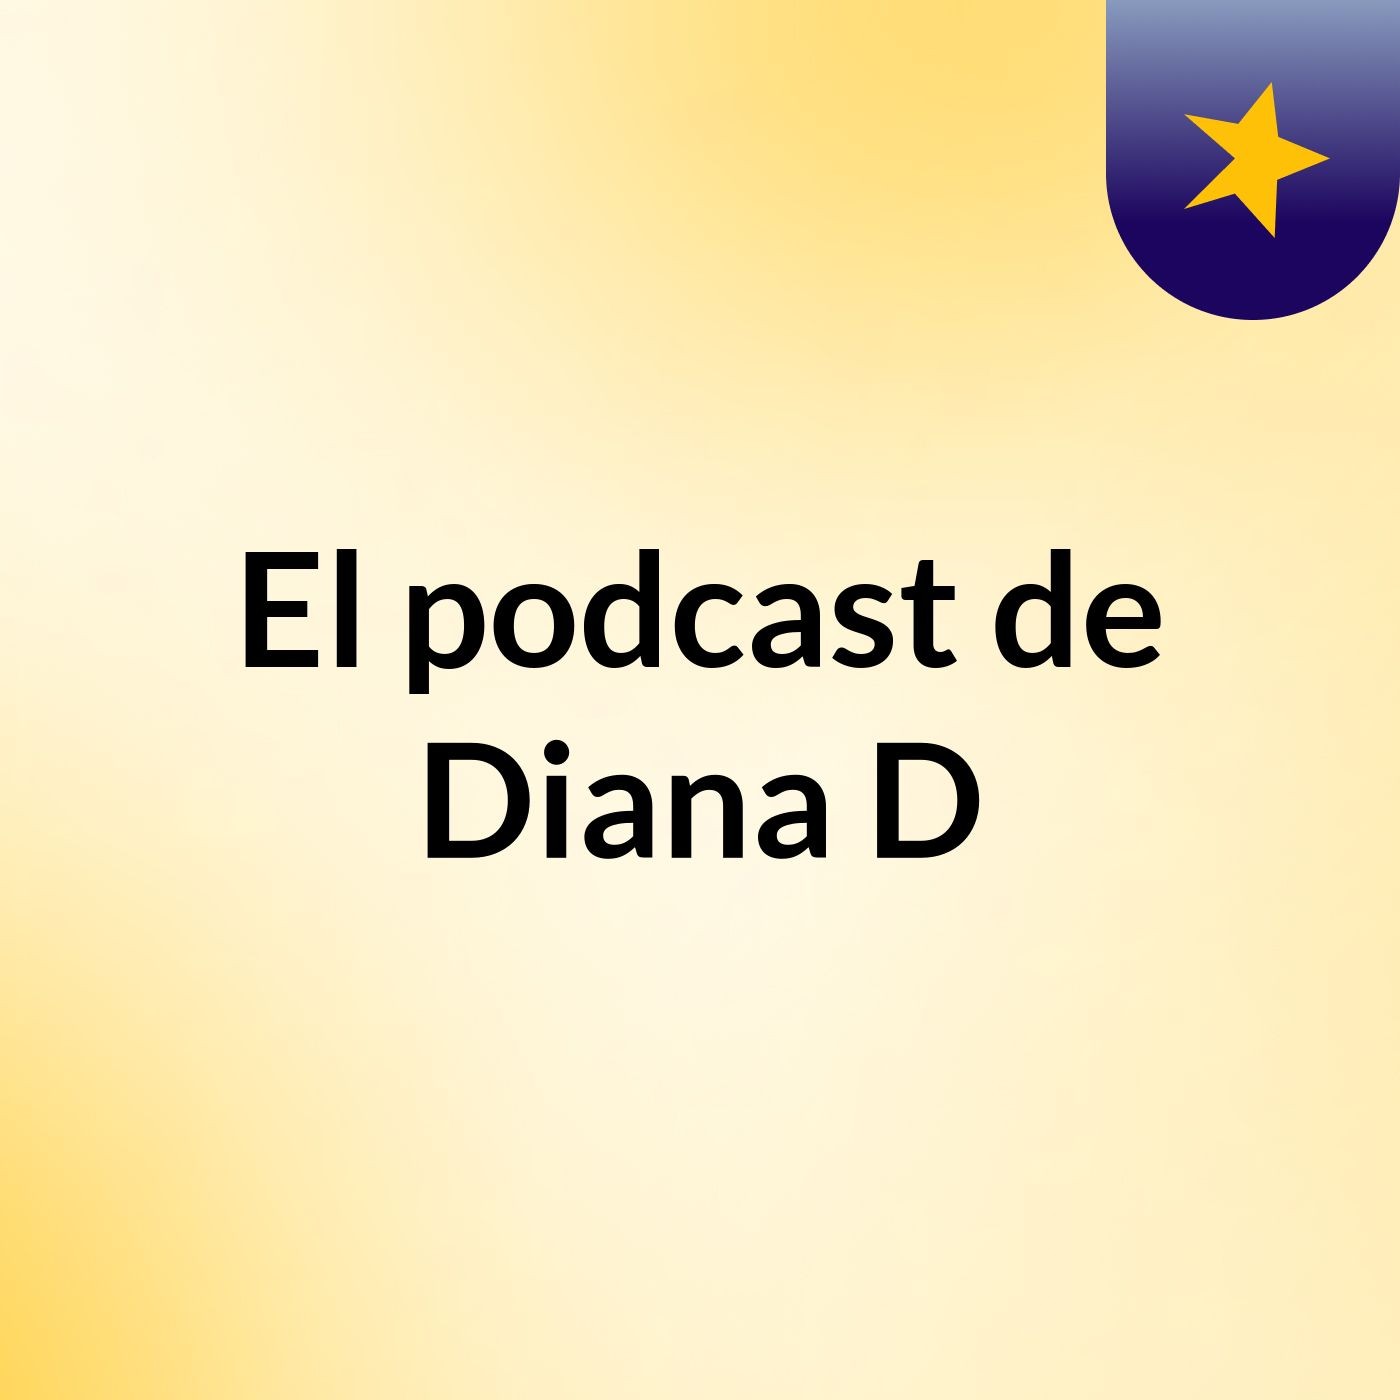 El podcast de Diana D